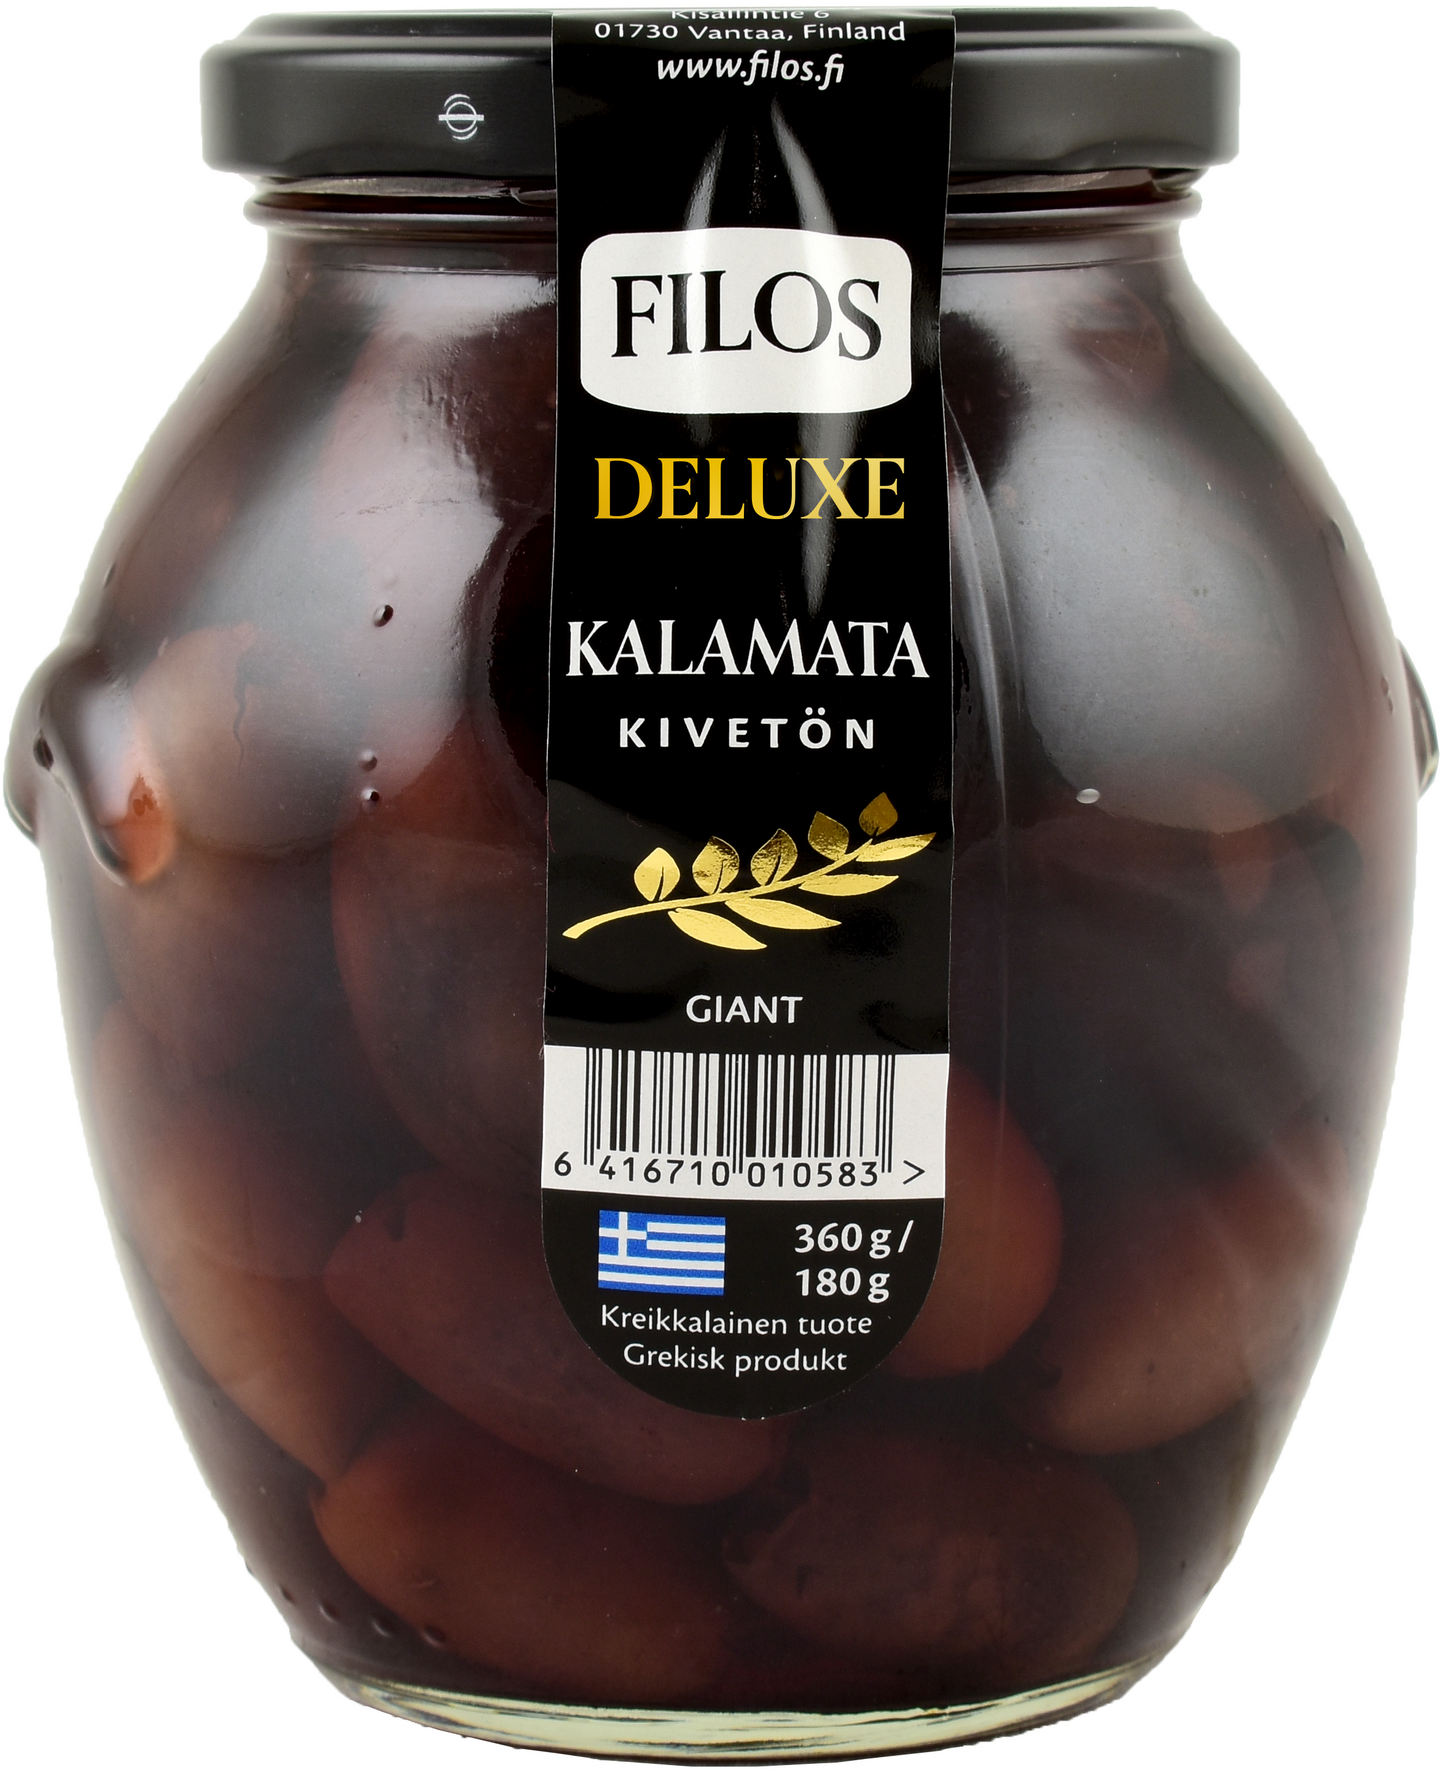 Filos Deluxe Kalamata-oliivi kivetön Giant 360g/180g